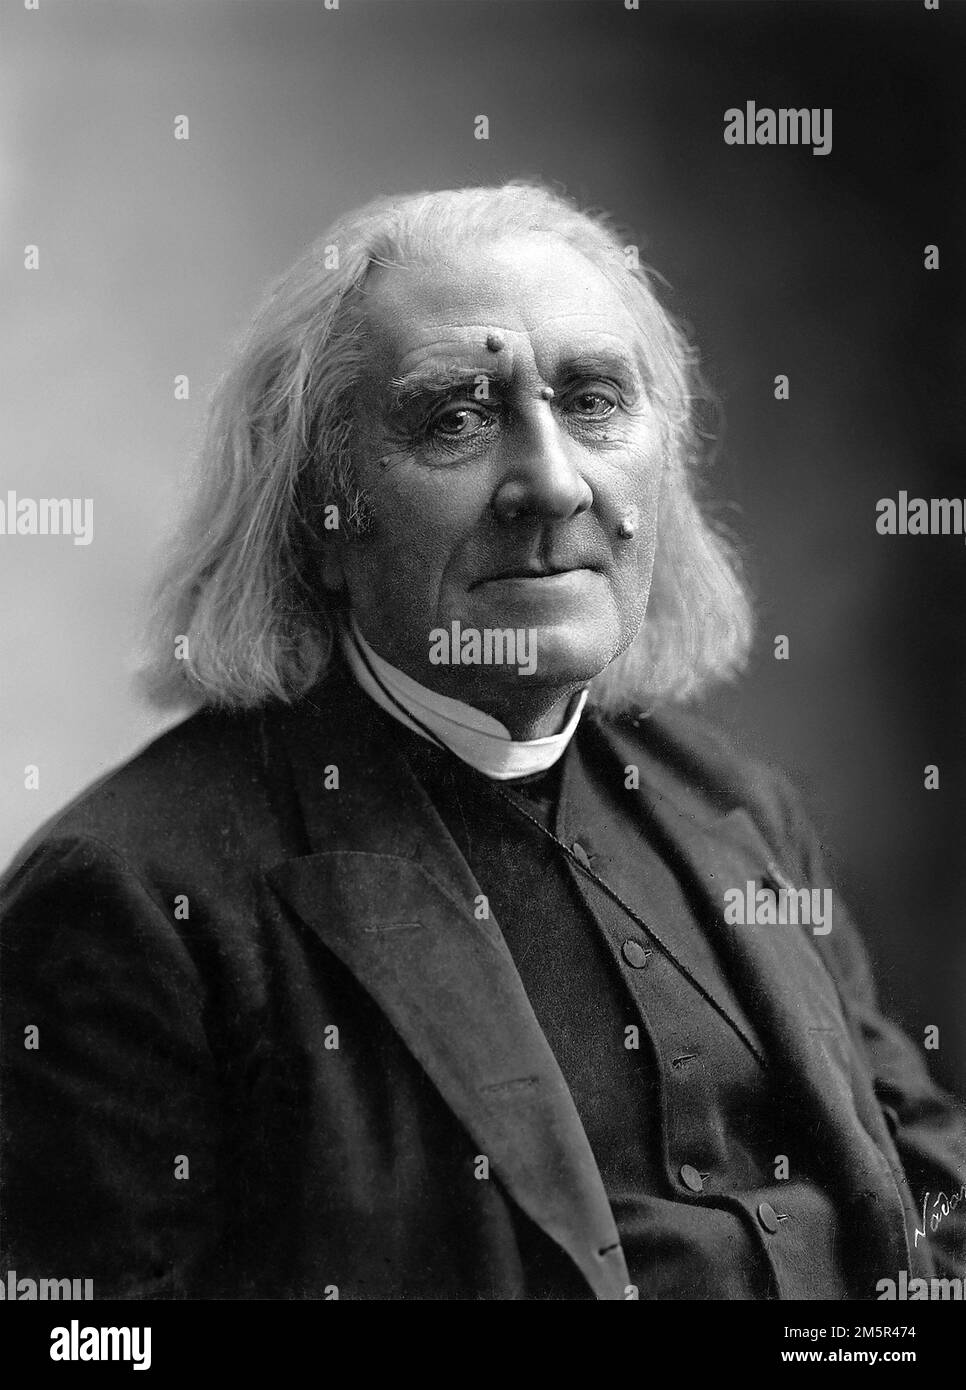 Portrait du pianiste et compositeur hongrois Franz Liszt (1811-1886). Photo de Nadar [Gaspard Félix Tournachon], 1886. Banque D'Images